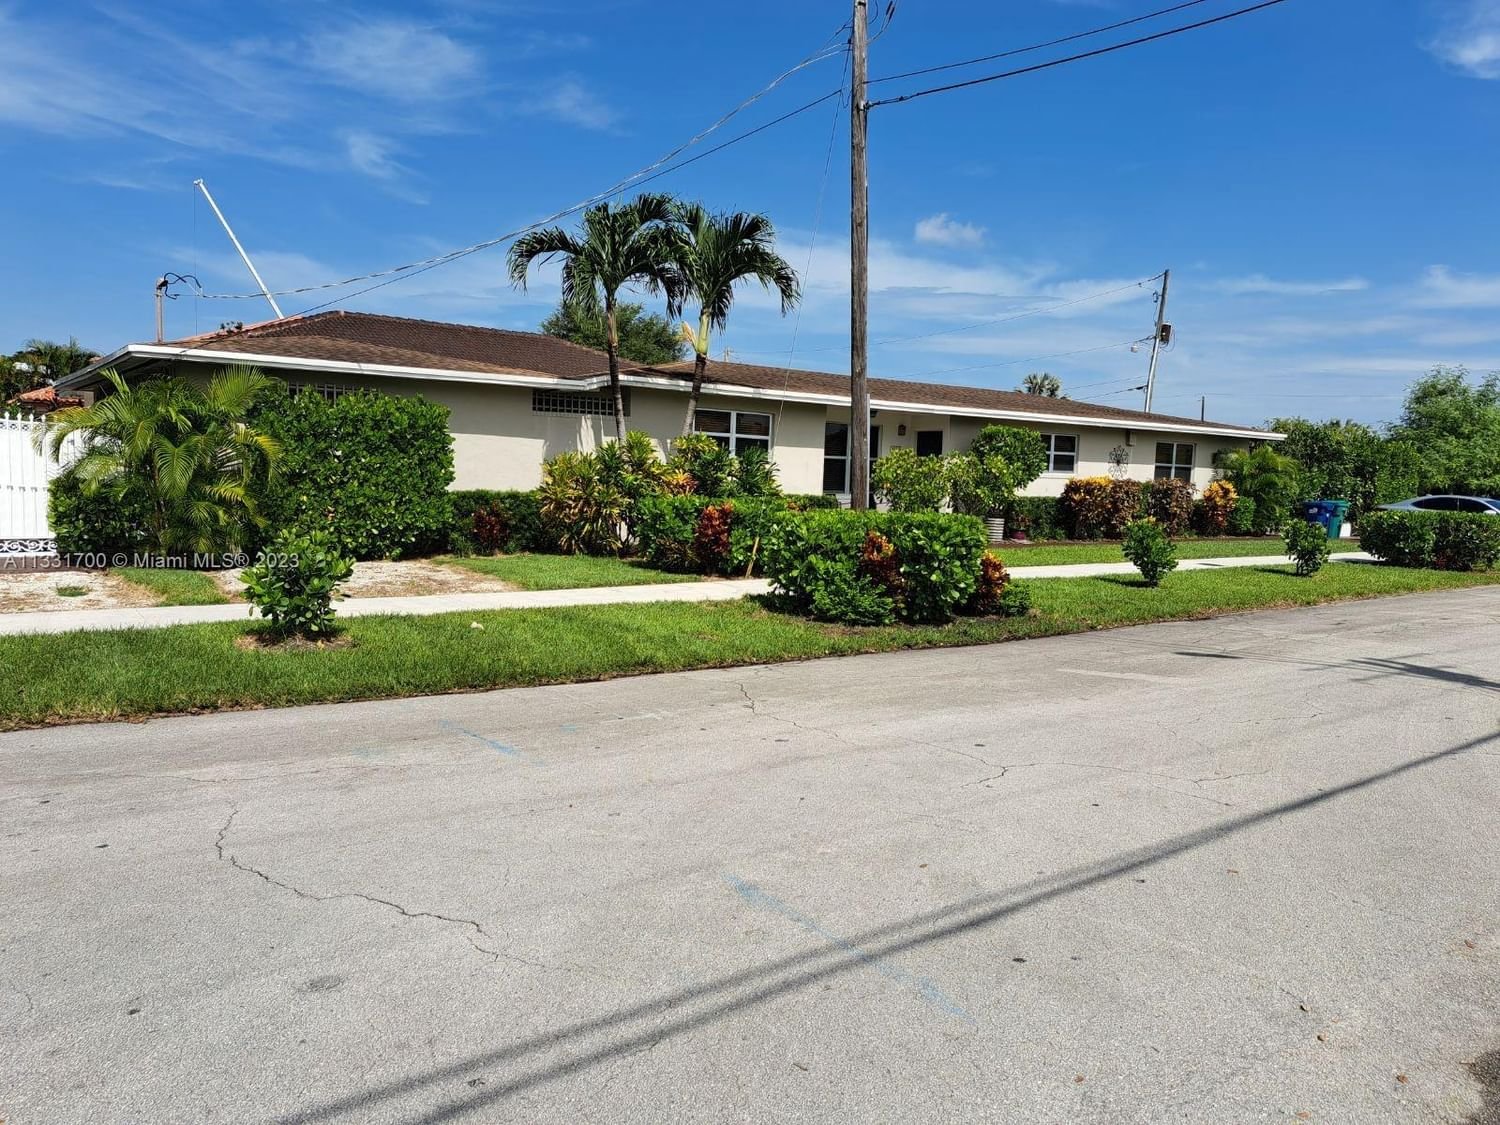 Real estate property located at 2310 99th Ave, Miami-Dade County, REV PL CORAL BLVD, Miami, FL